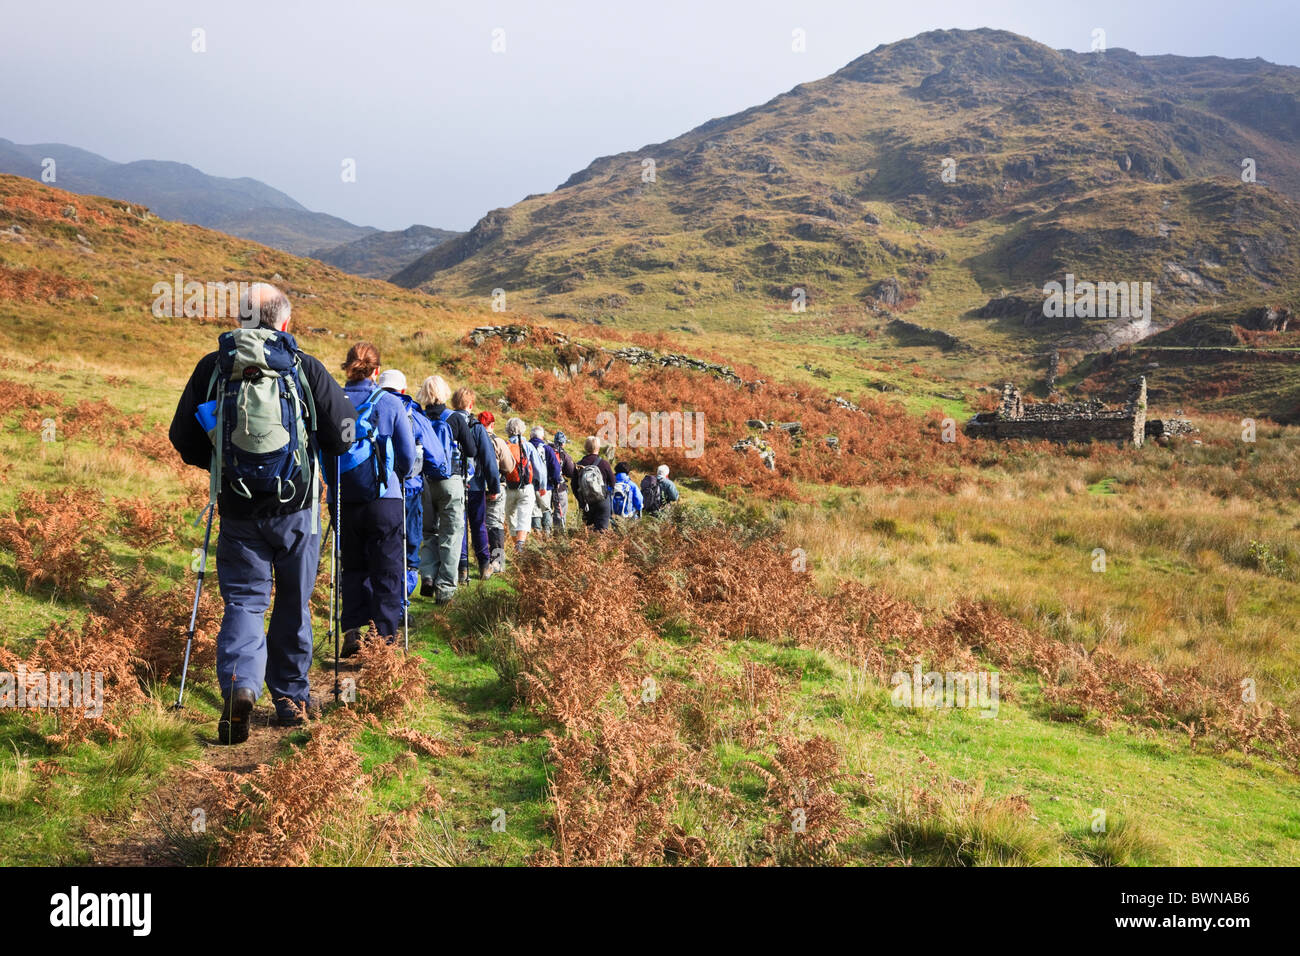 Groupe de Randonneurs marchant dans les montagnes de Snowdonia National Park à l'automne. Nantgwynant, Gwynedd, au nord du Pays de Galles, Royaume-Uni. Banque D'Images